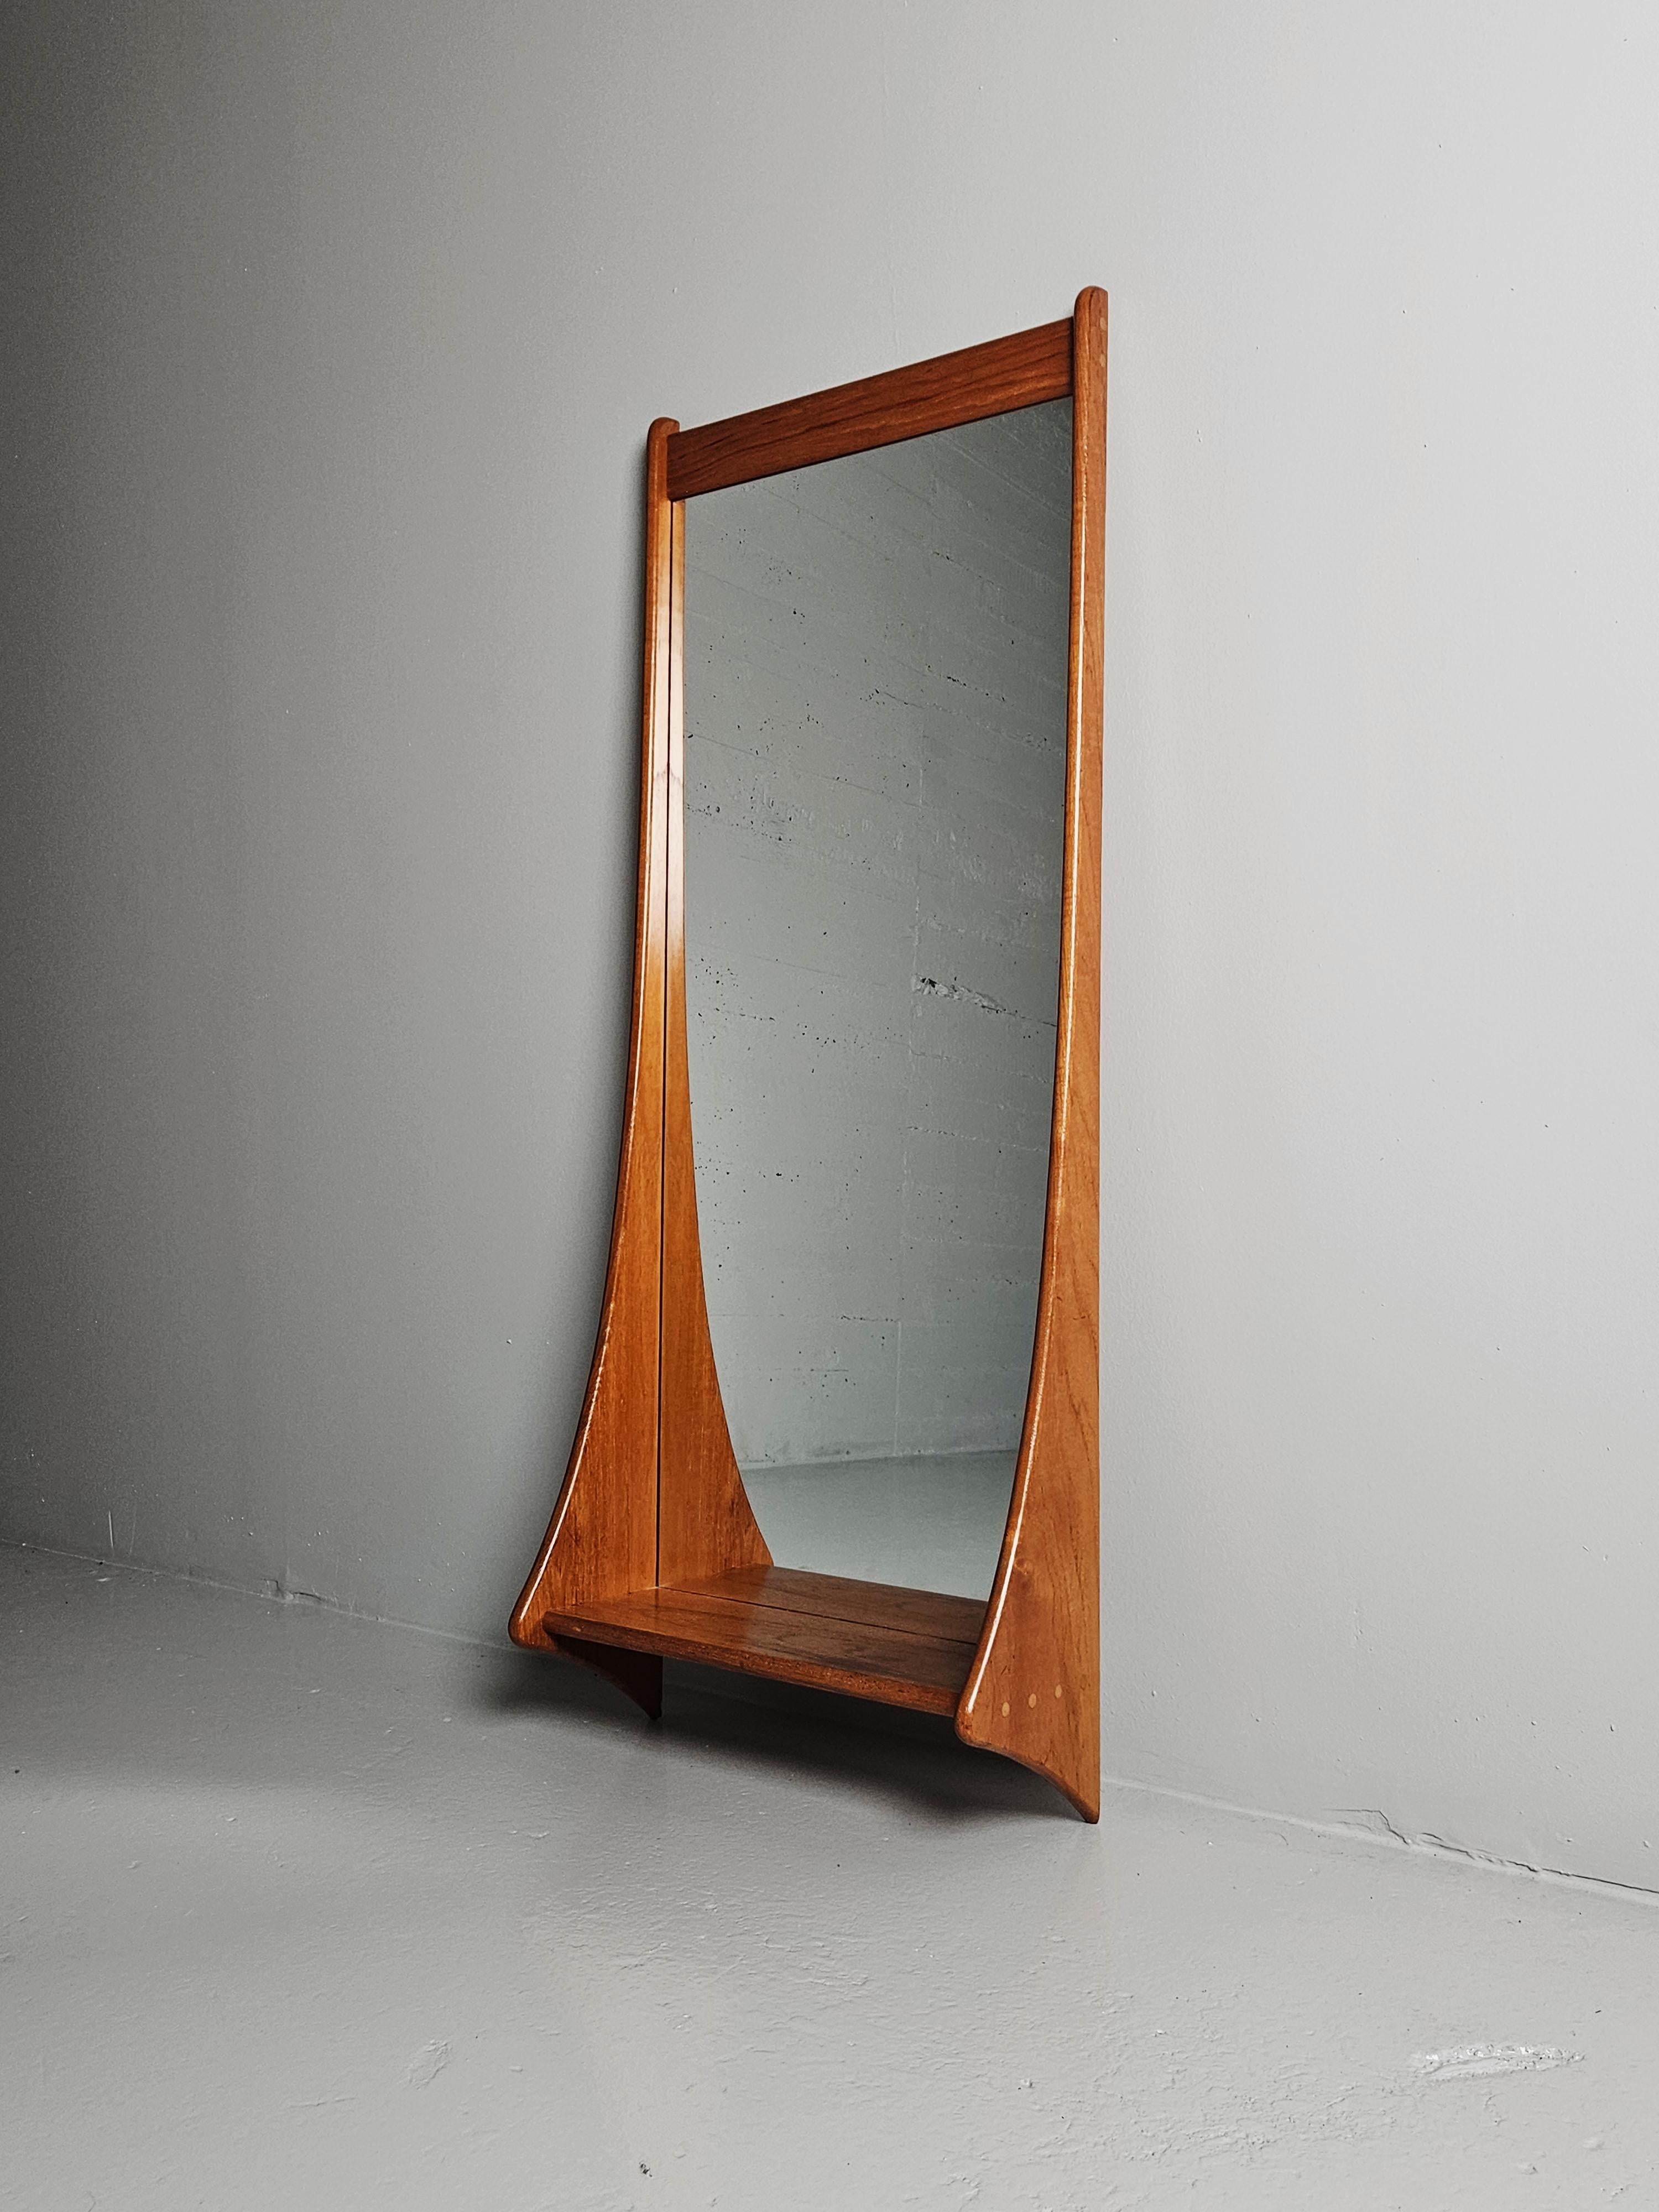 Schöner Spiegel von einem unbekannten Designer, hergestellt in Dänemark in den 1960er Jahren. 

Hergestellt aus massivem Teakholz mit einem Regal mit dekorativer Zapfenkonstruktion. 